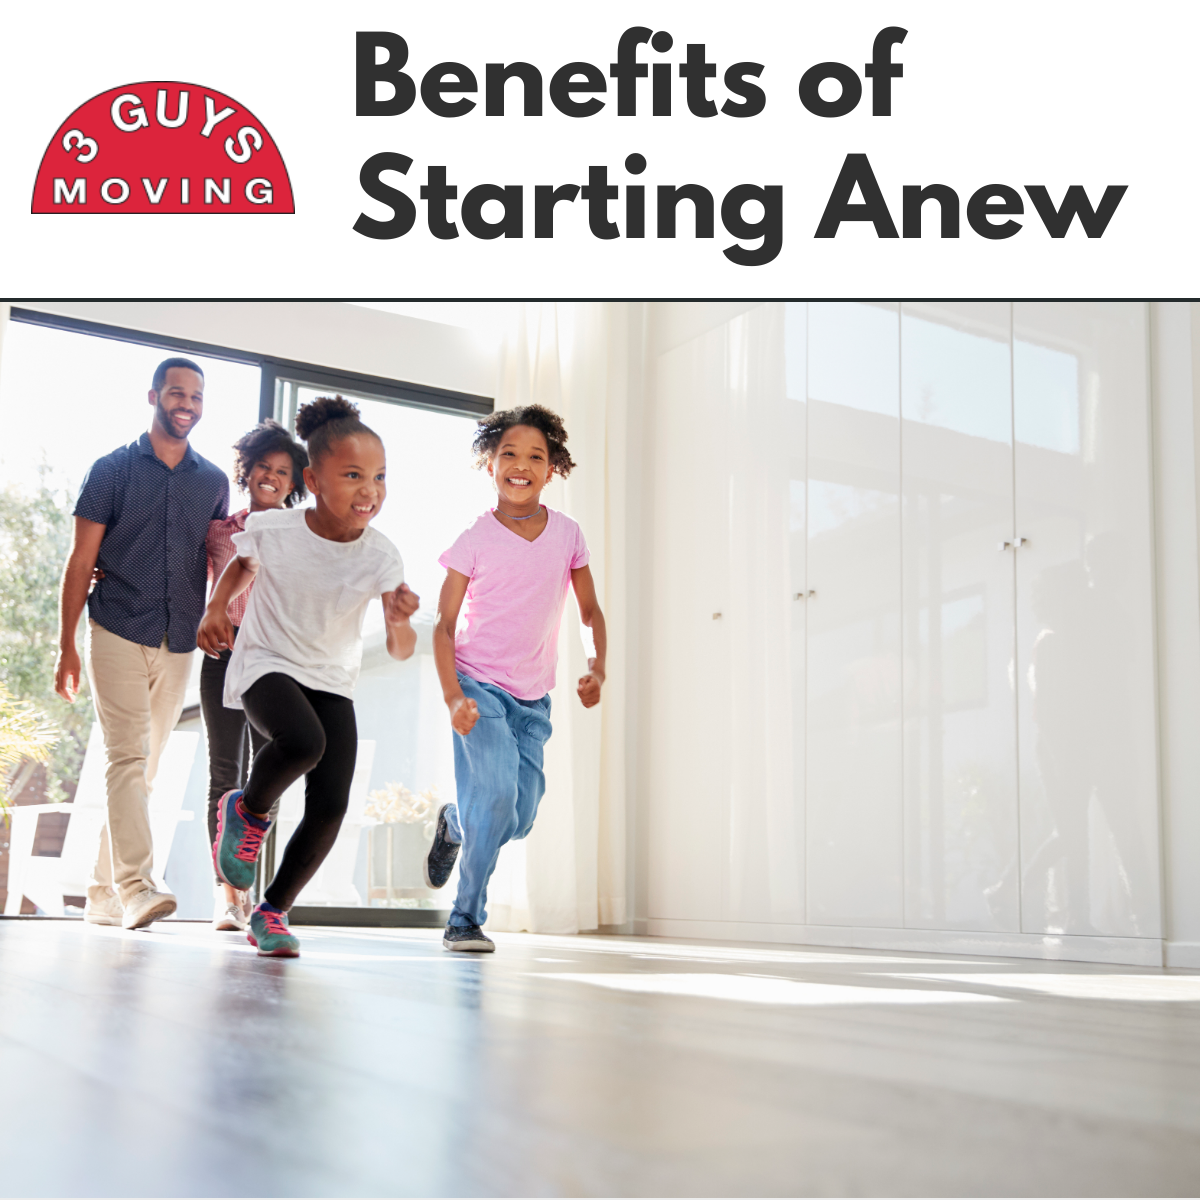 Benefits of Starting Anew - Benefits of Starting Anew